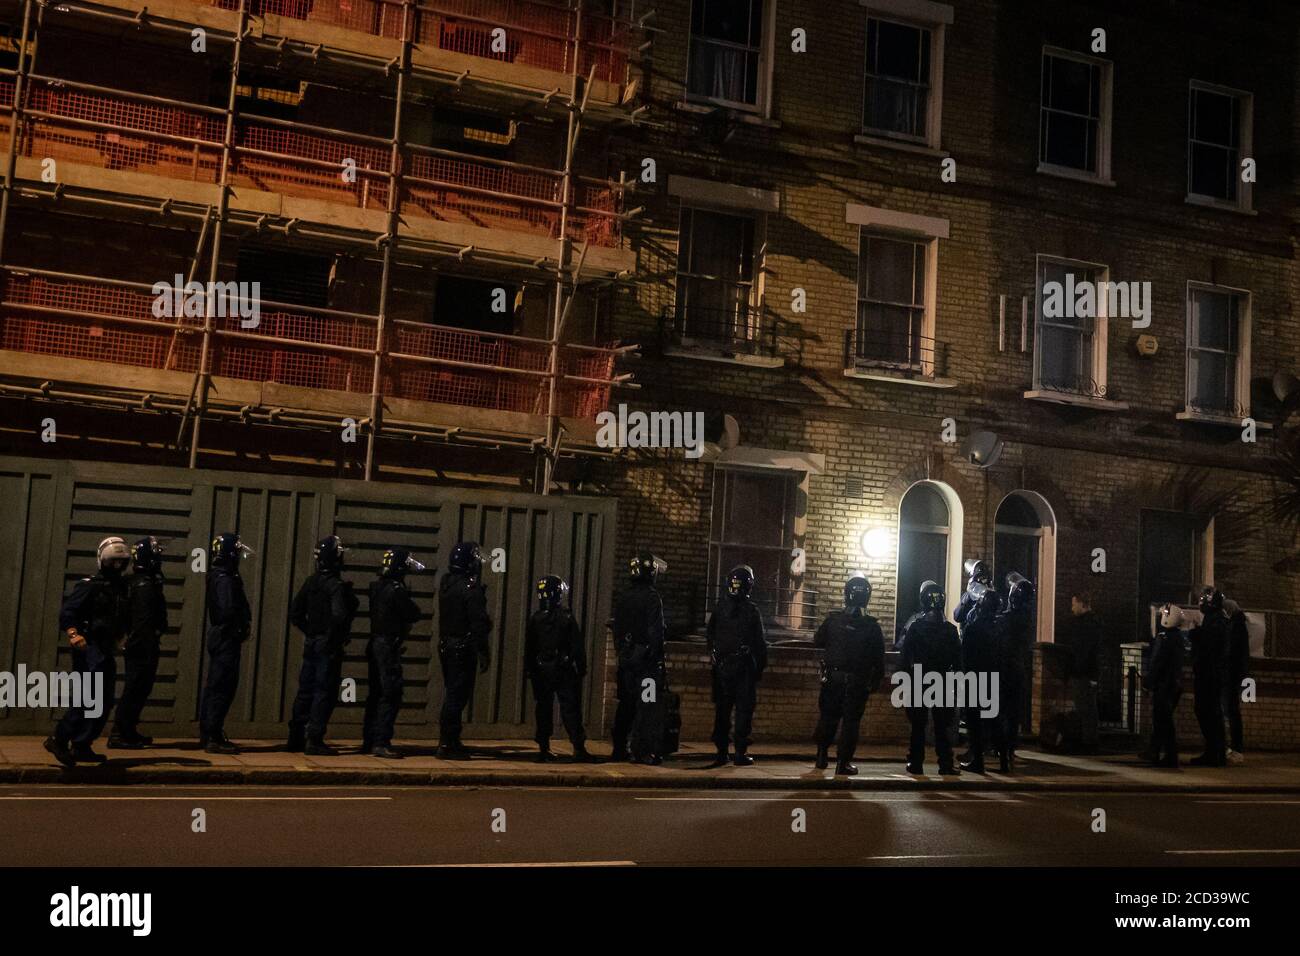 Metropolitan Police Officers während einer Razzia auf einem Grundstück auf dem York Way in London, als sie die "Ältesten" oder "High Ups" in einer kriminellen Bande im Norden Londons anvisieren. Stockfoto